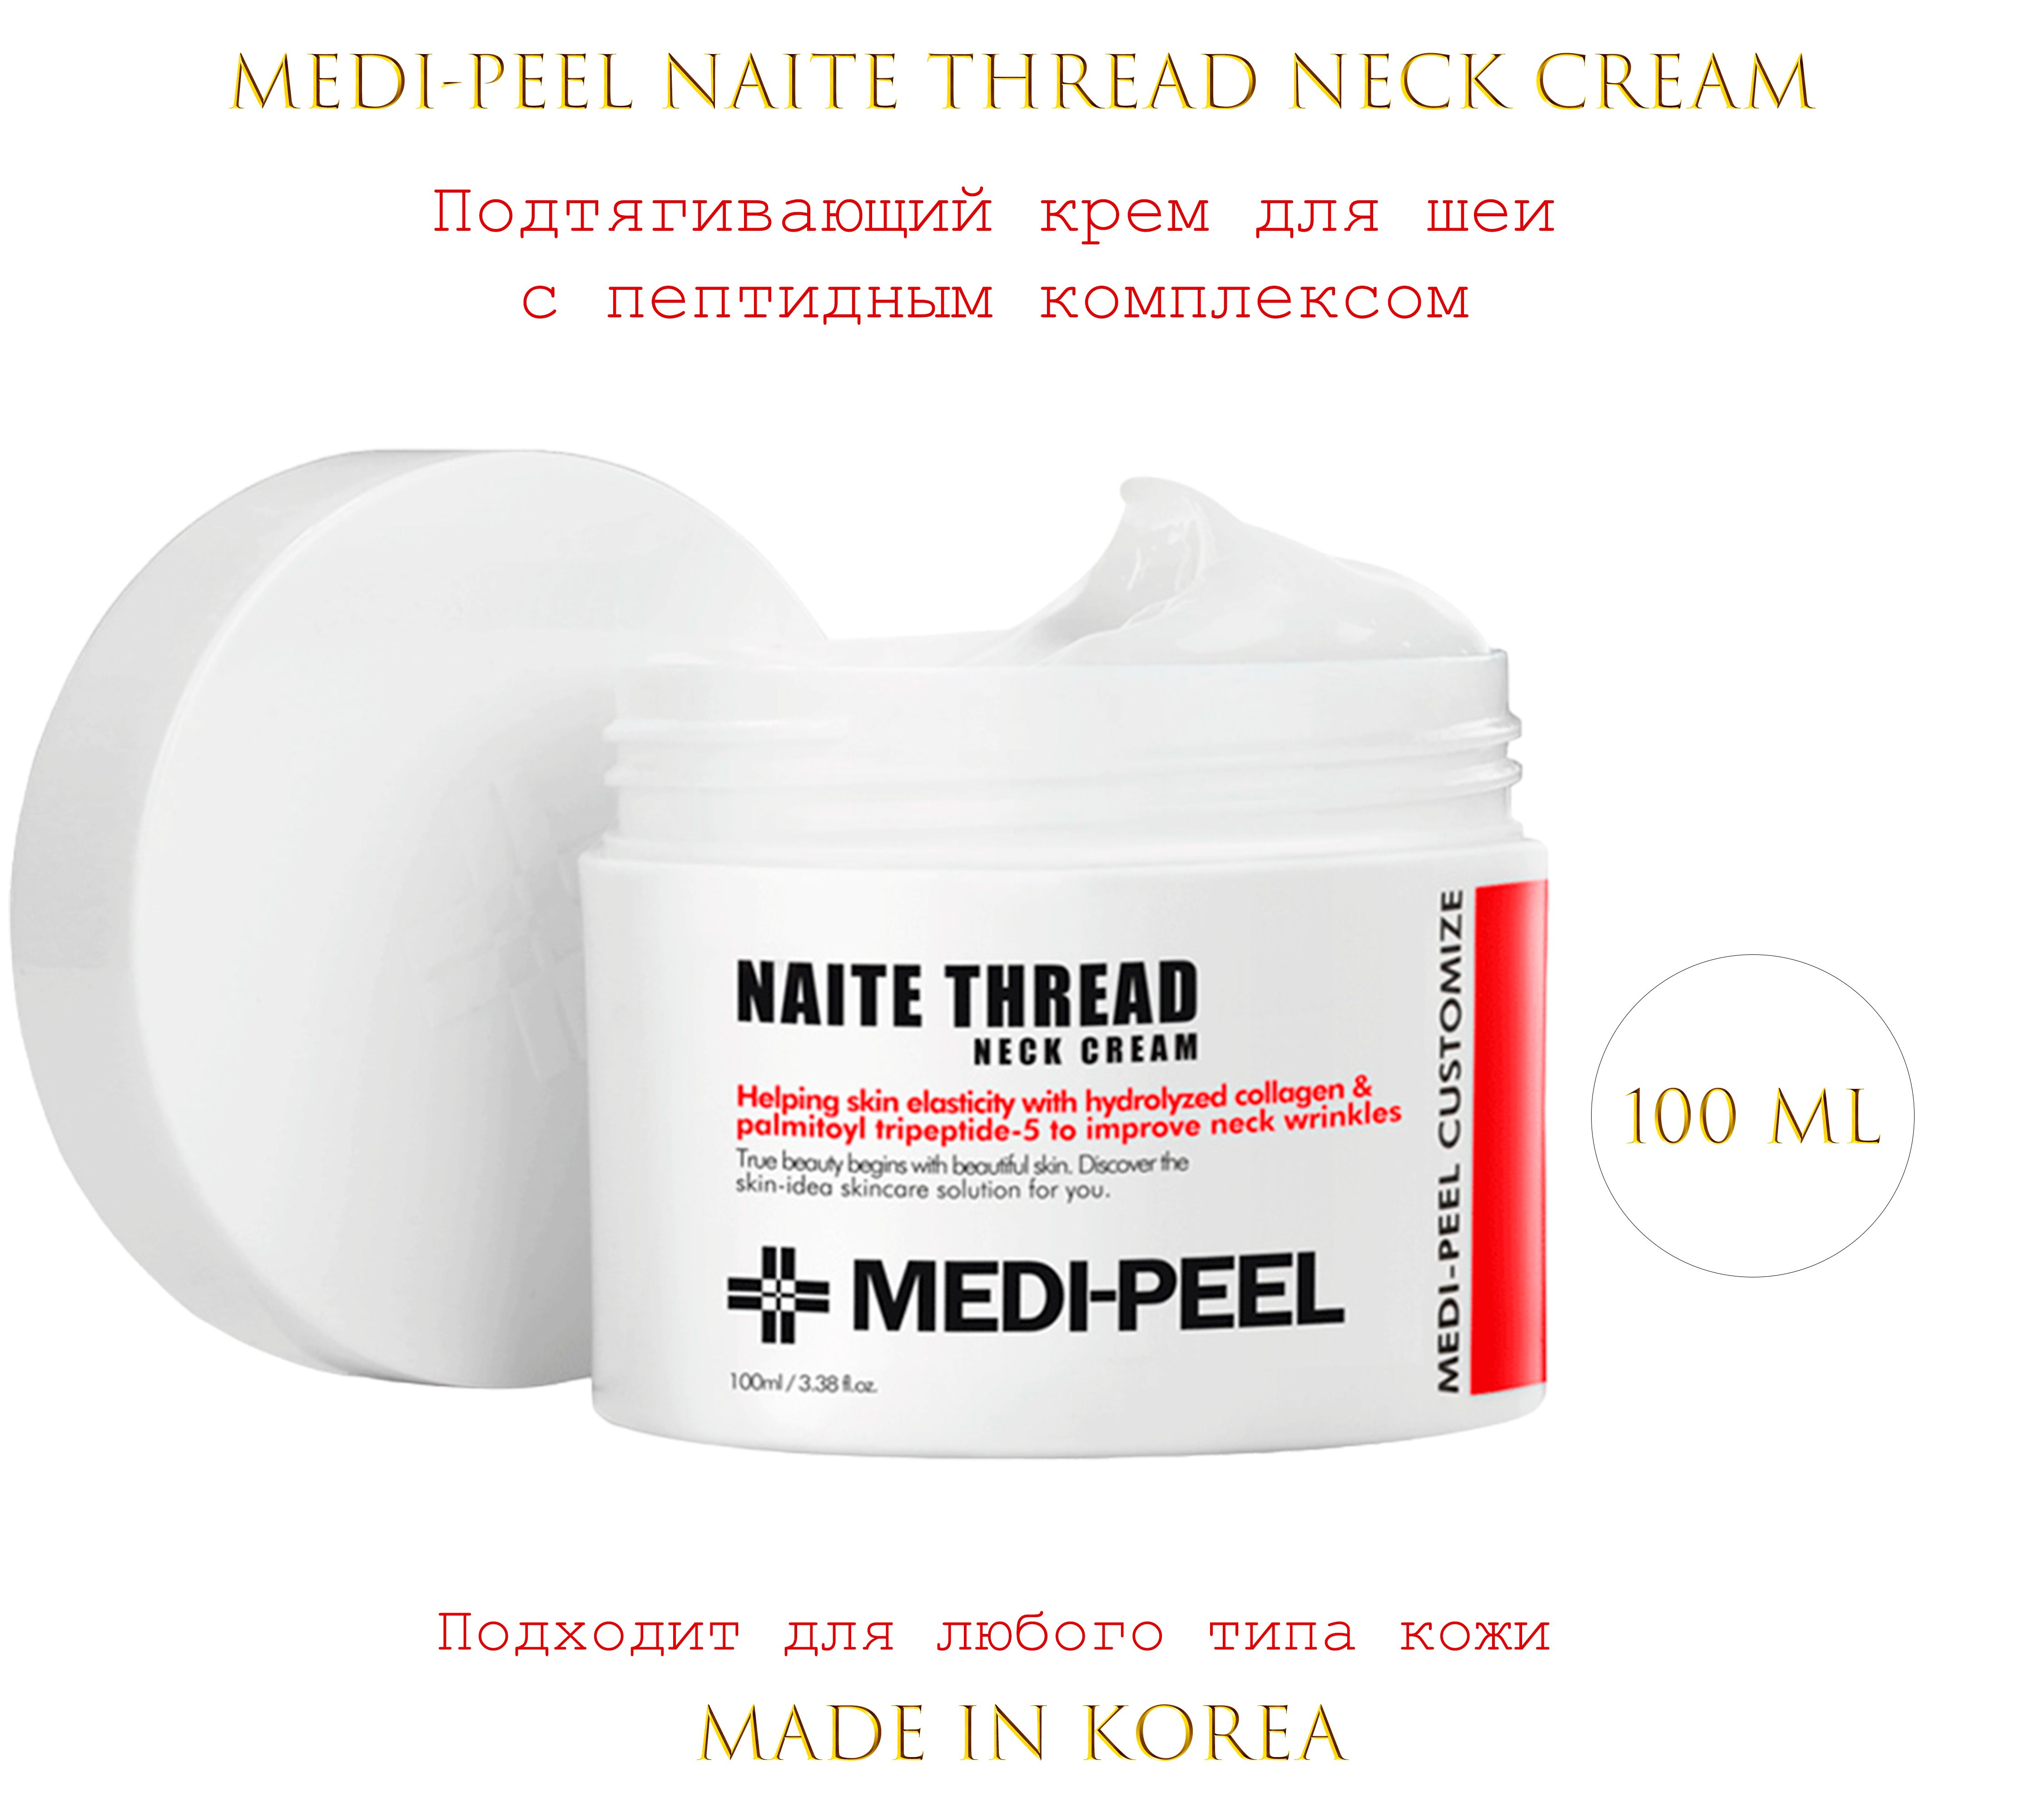 Крем для подтягивания. Medi-Peel крем для шеи Naite thread Neck Cream. Medi-Peel Premium Naite thread Neck Cream(100ml). Medi-Peel крем моделирующий для шеи и зоны декольте - Naite thread Neck Cream 100 мл. Medi-Peel крем для шеи с пептидным комплексом.